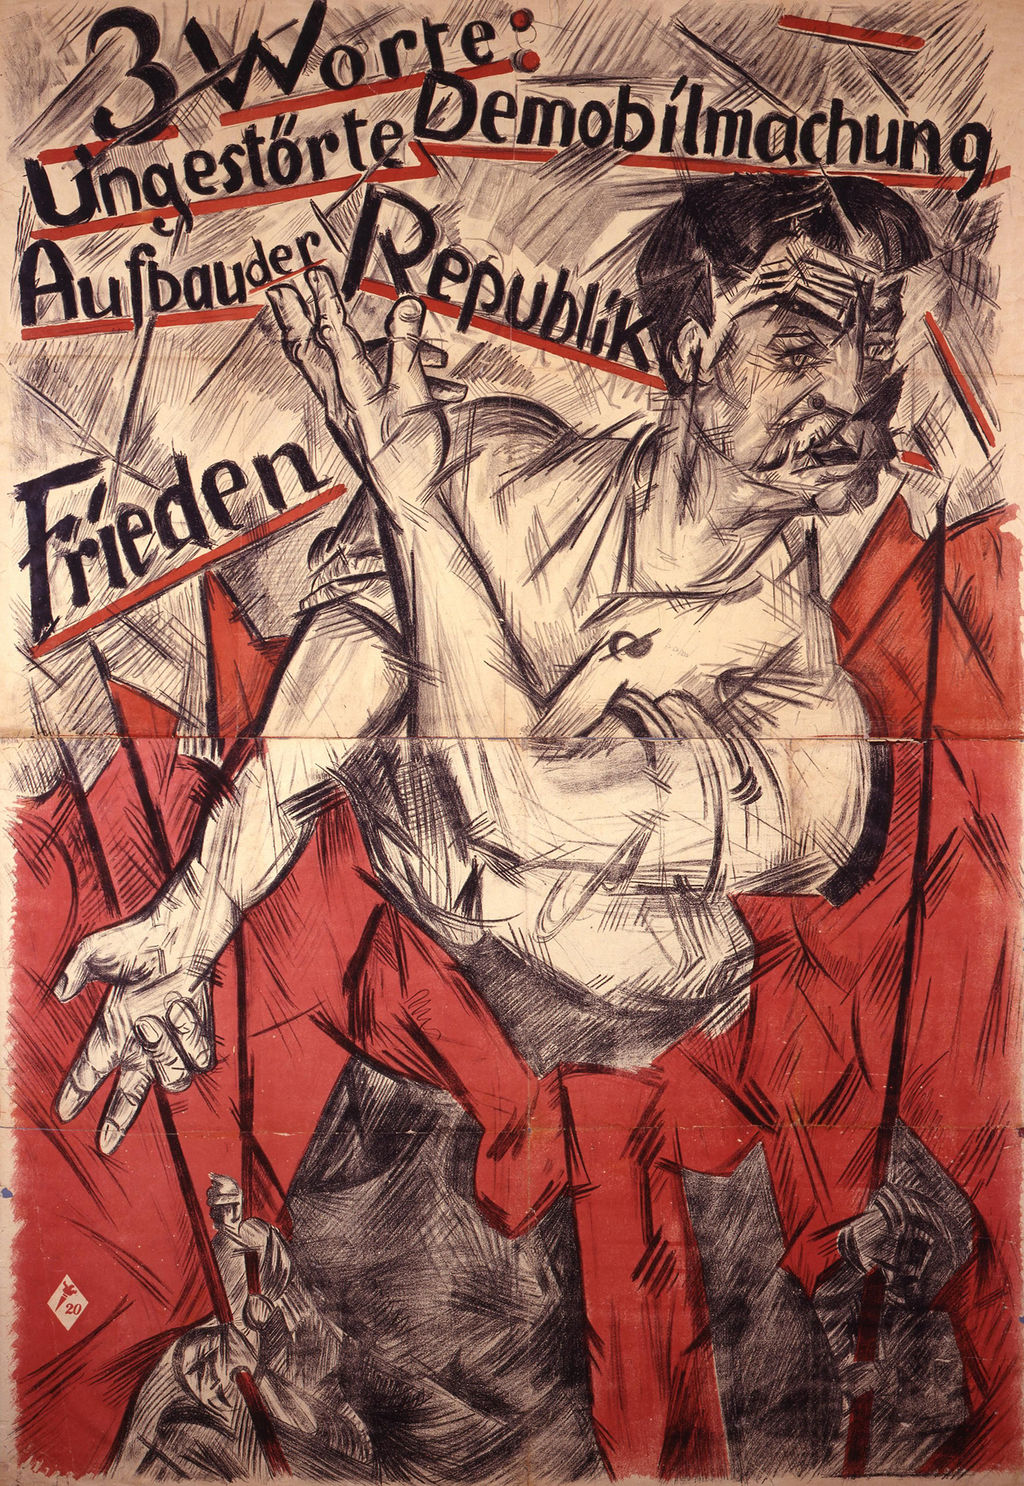 Plakat: Heinrich Richter-Berlin "3 Worte: Ungestörte Demobilmachung / Aufbau der Republik / Frieden", 1918/19